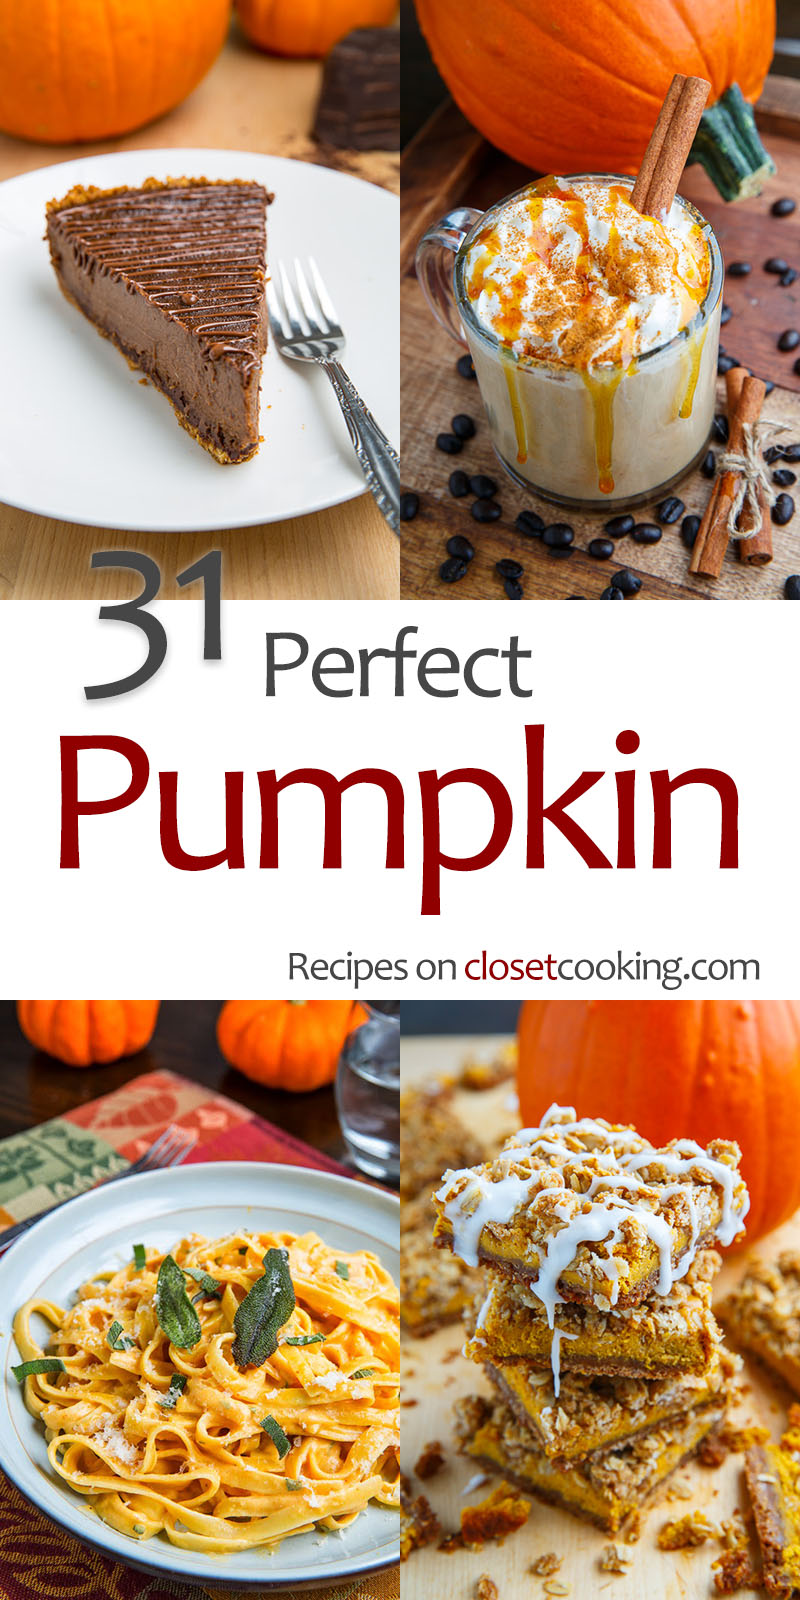 31 Pumpkin Recipes